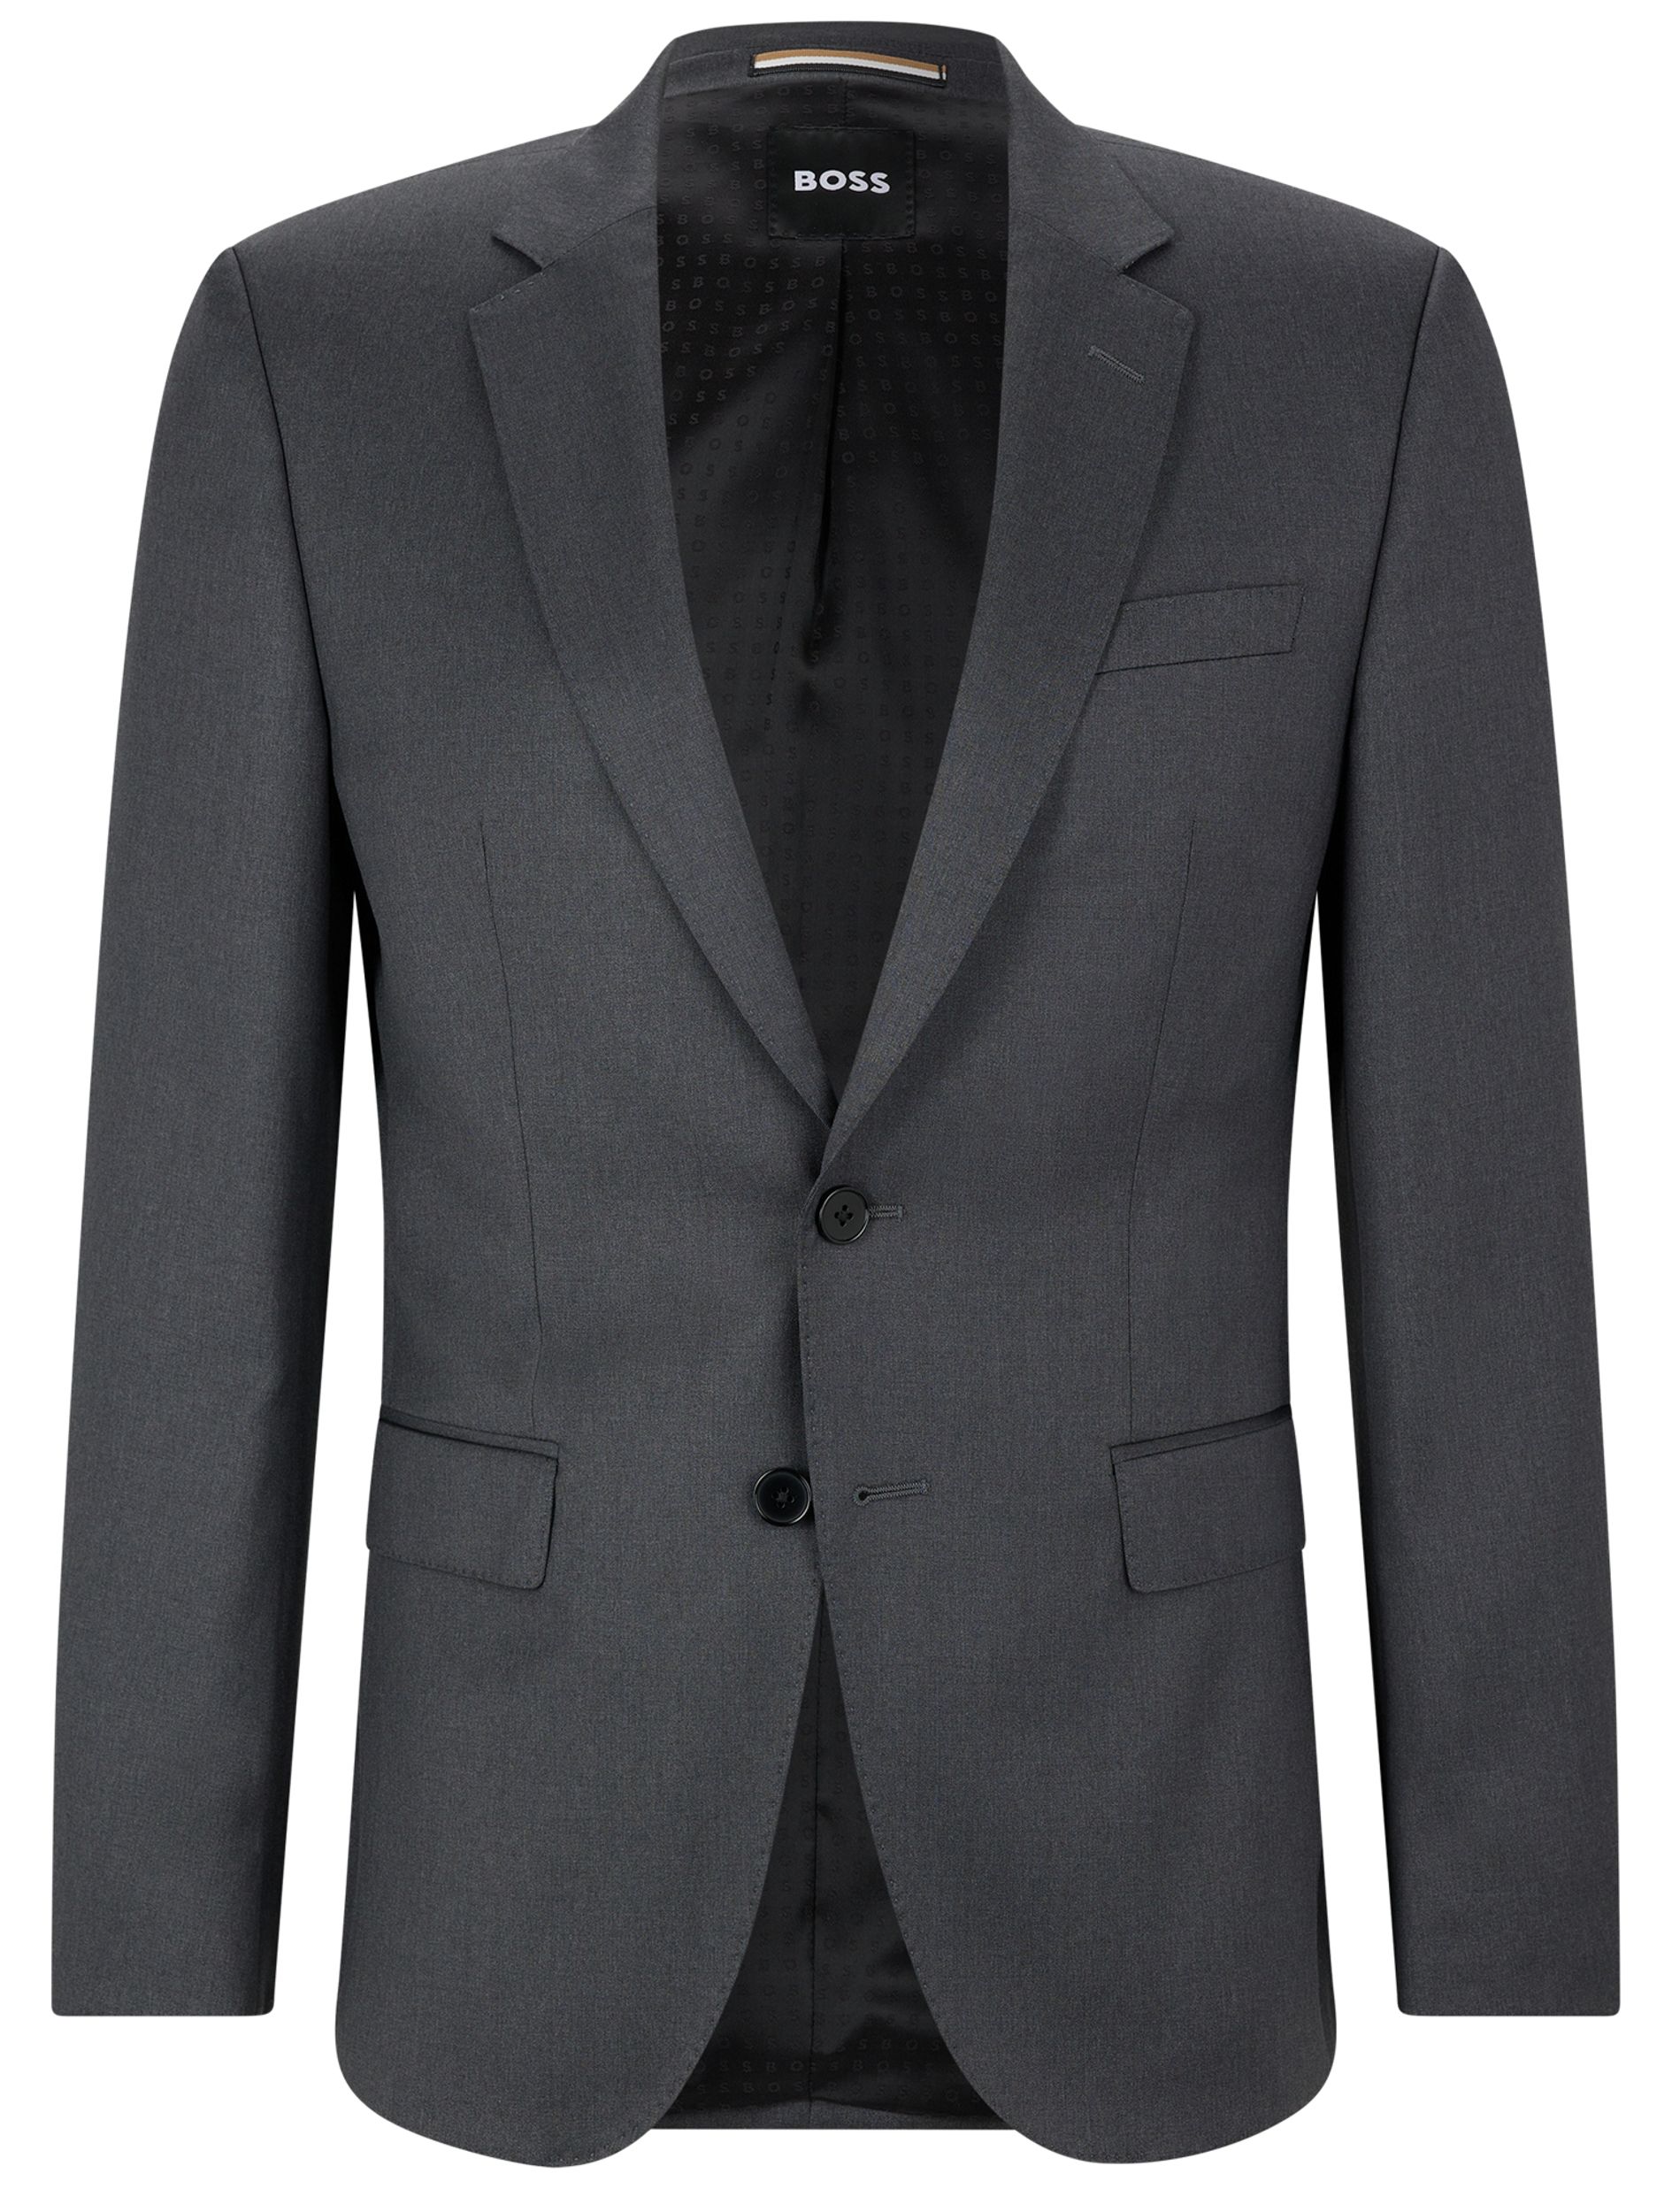 Hugo Boss Menswear Mix & Match Colbert Donker grijs 075743-002-102